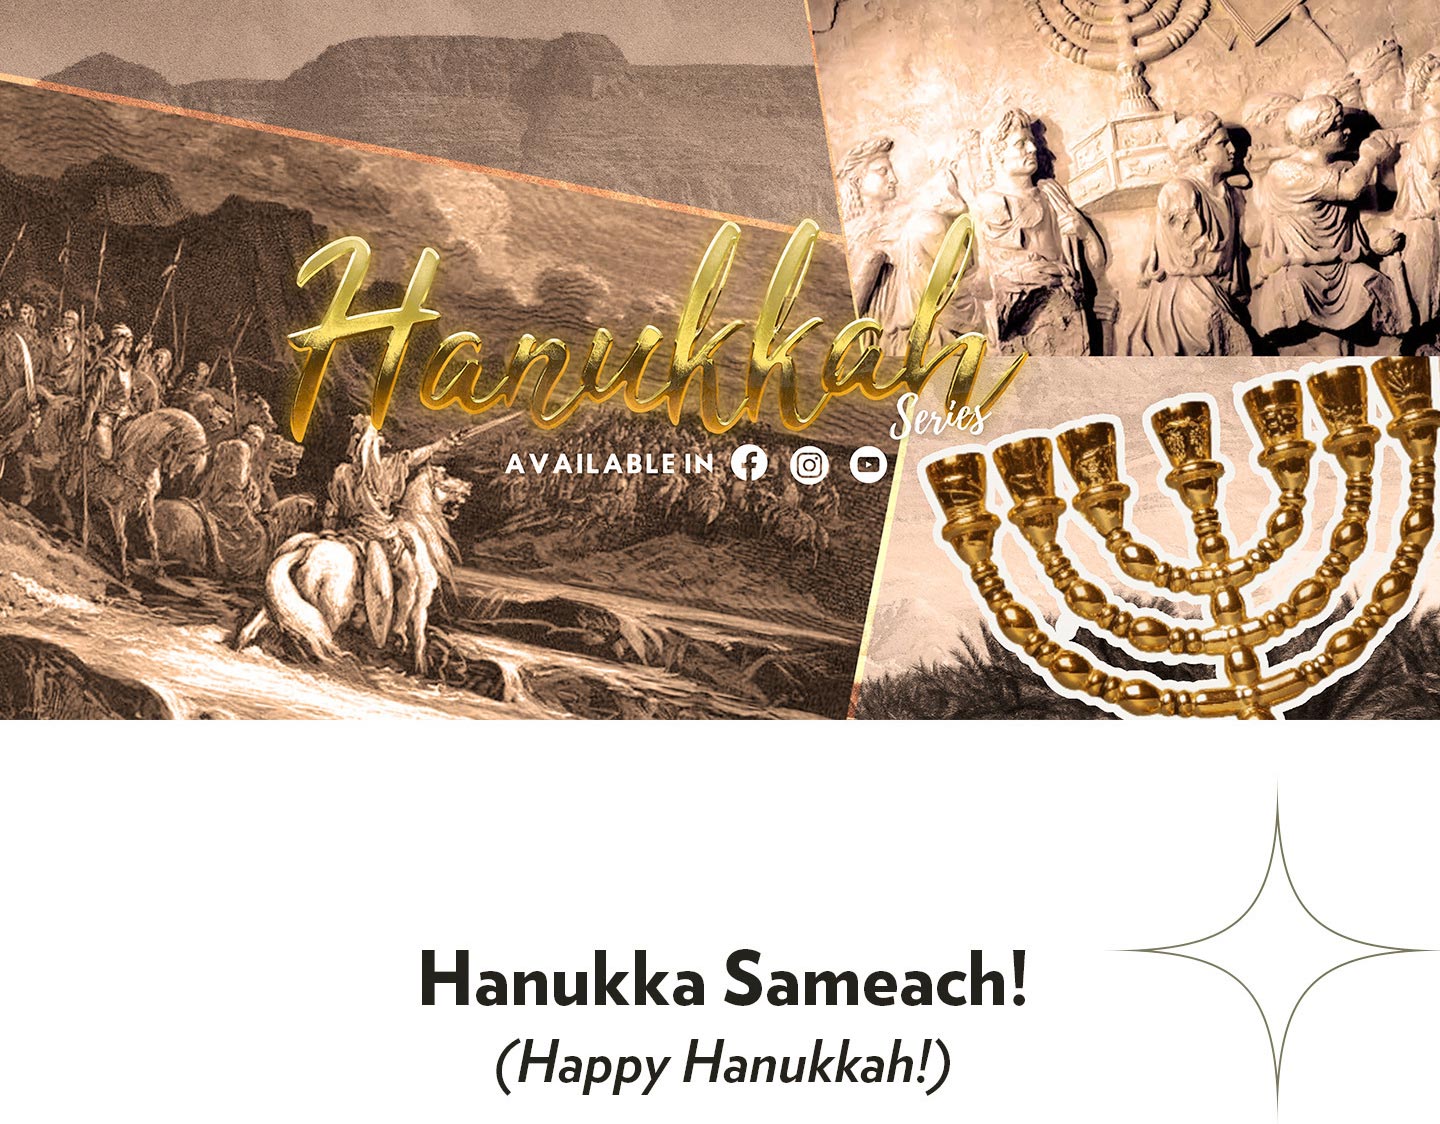 Happy Hannukah